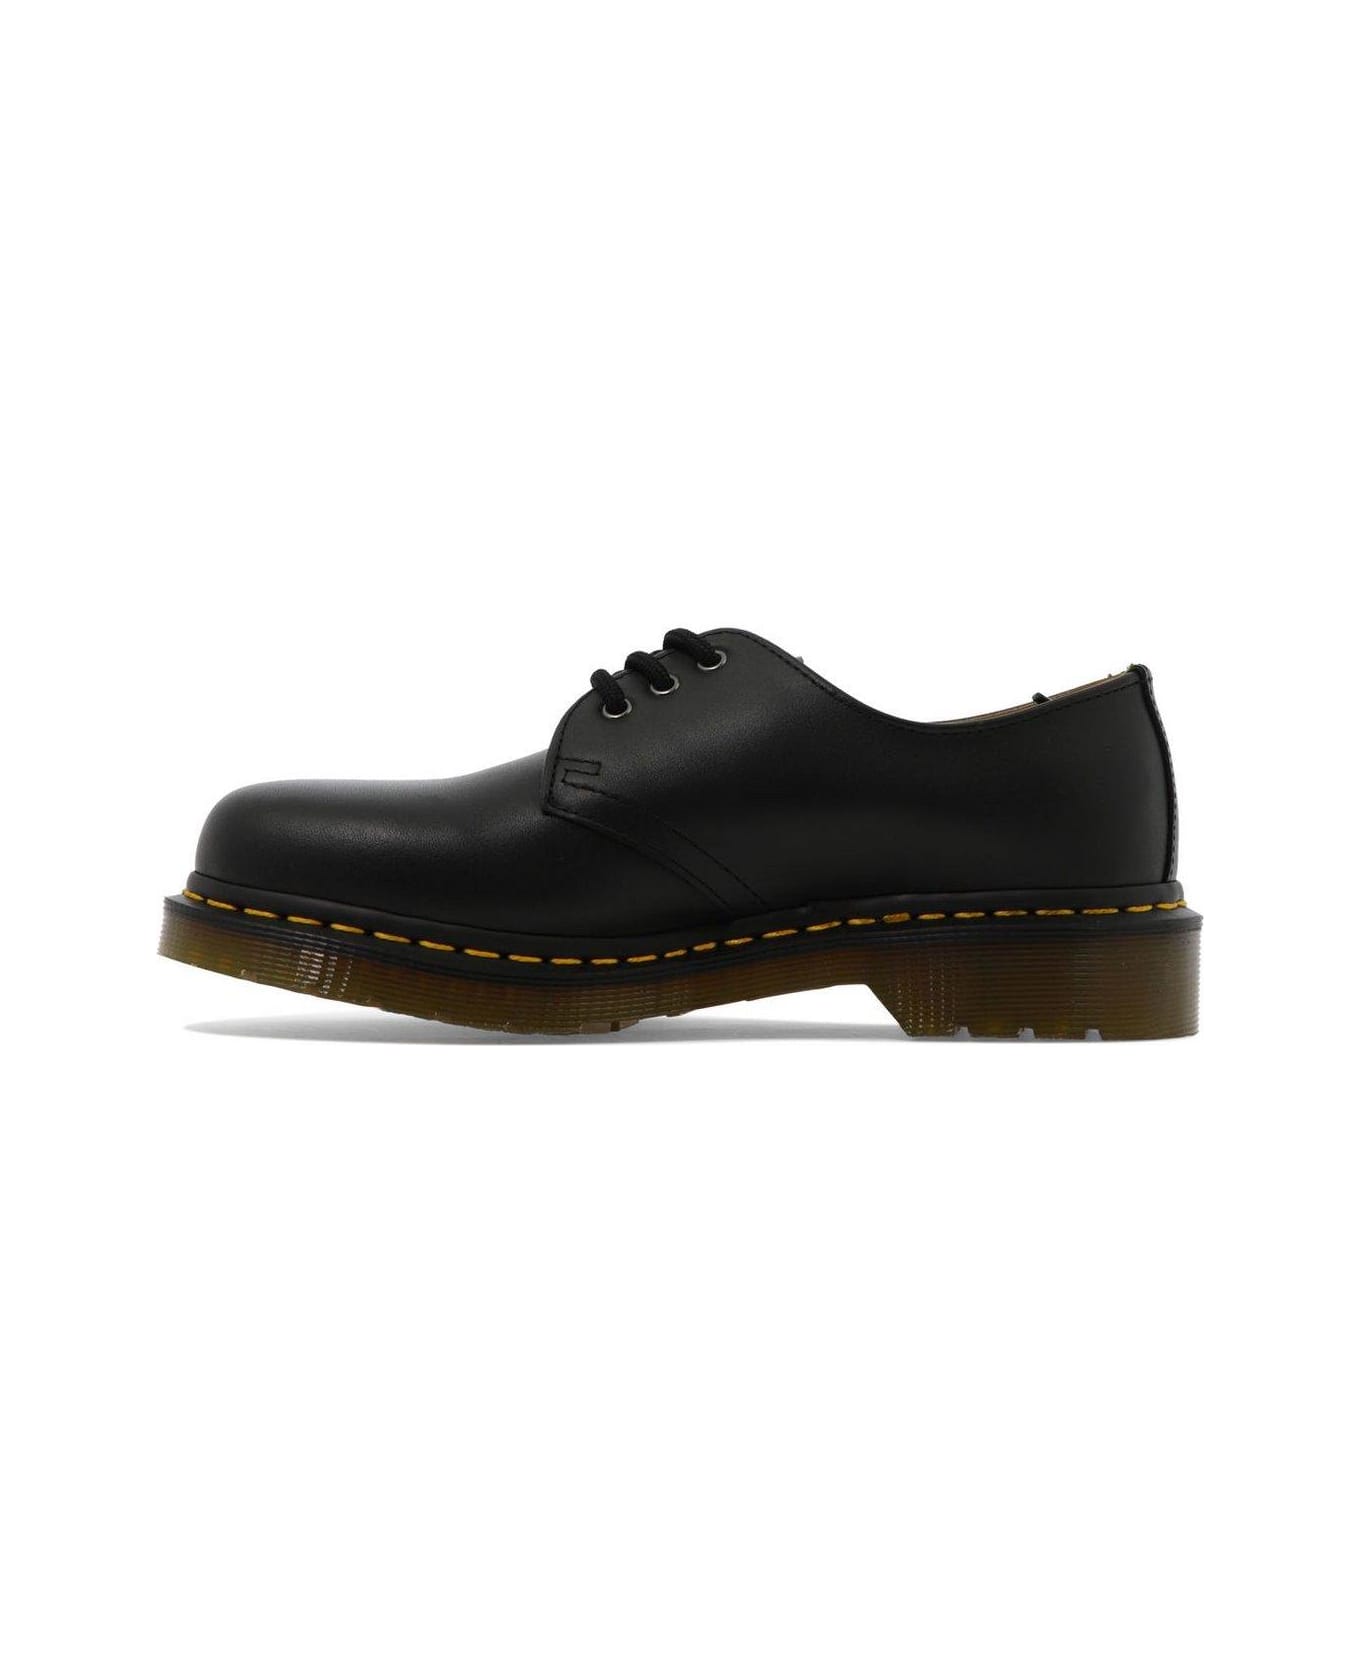 Dr. Martens 1461 Lace Up Shoes - Black